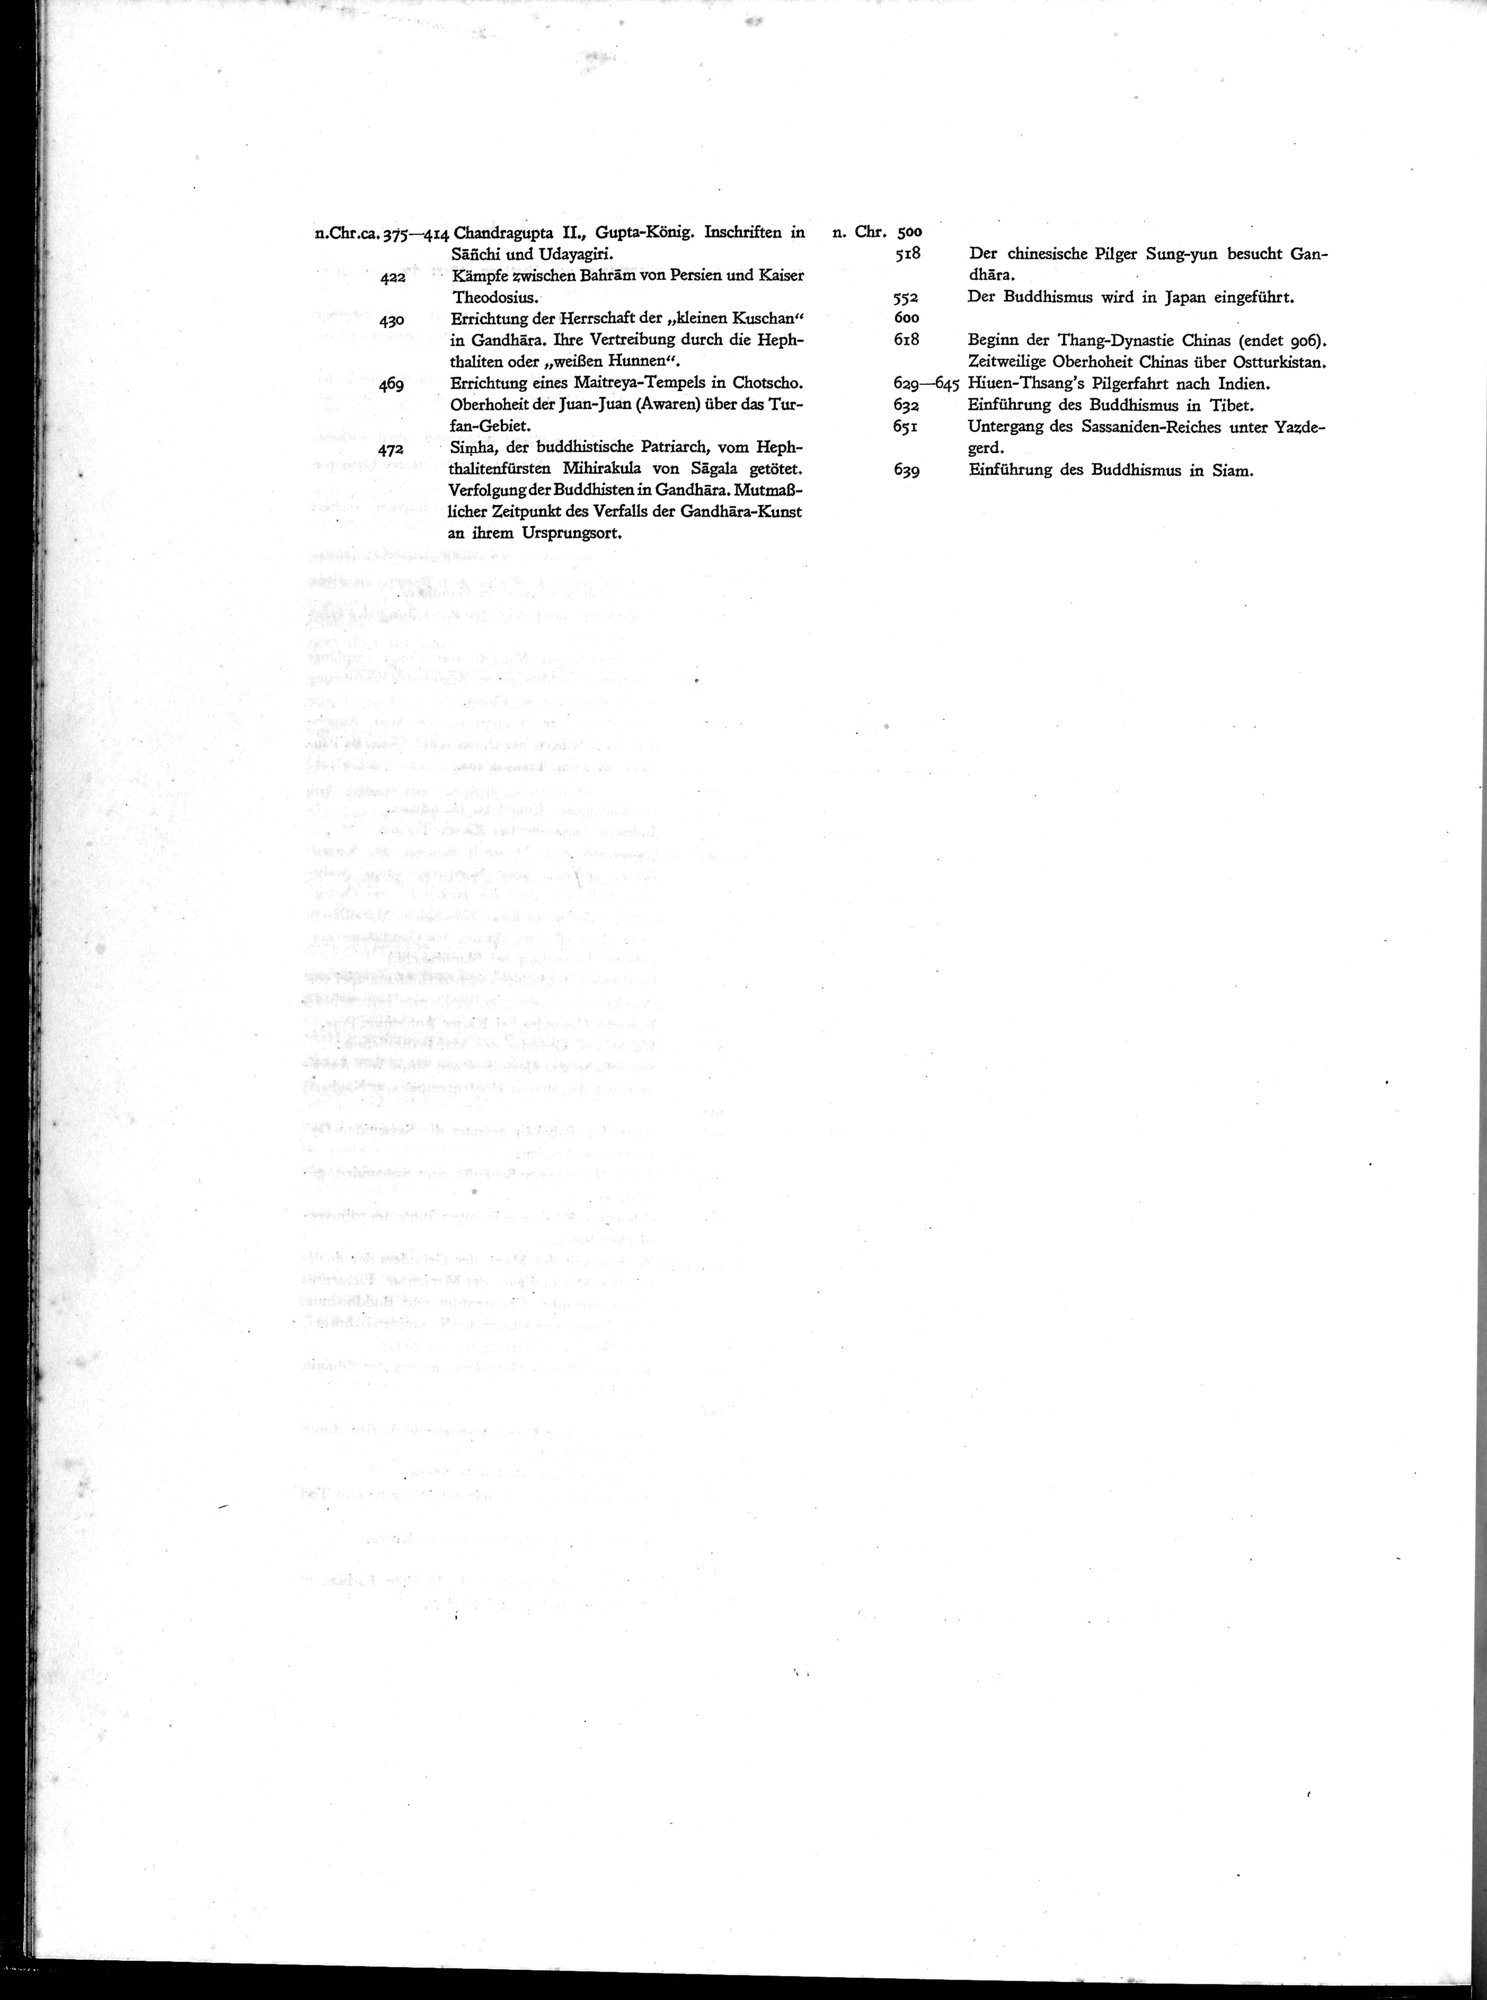 Die Buddhistische Spätantike in Mittelasien : vol.1 / Page 22 (Grayscale High Resolution Image)